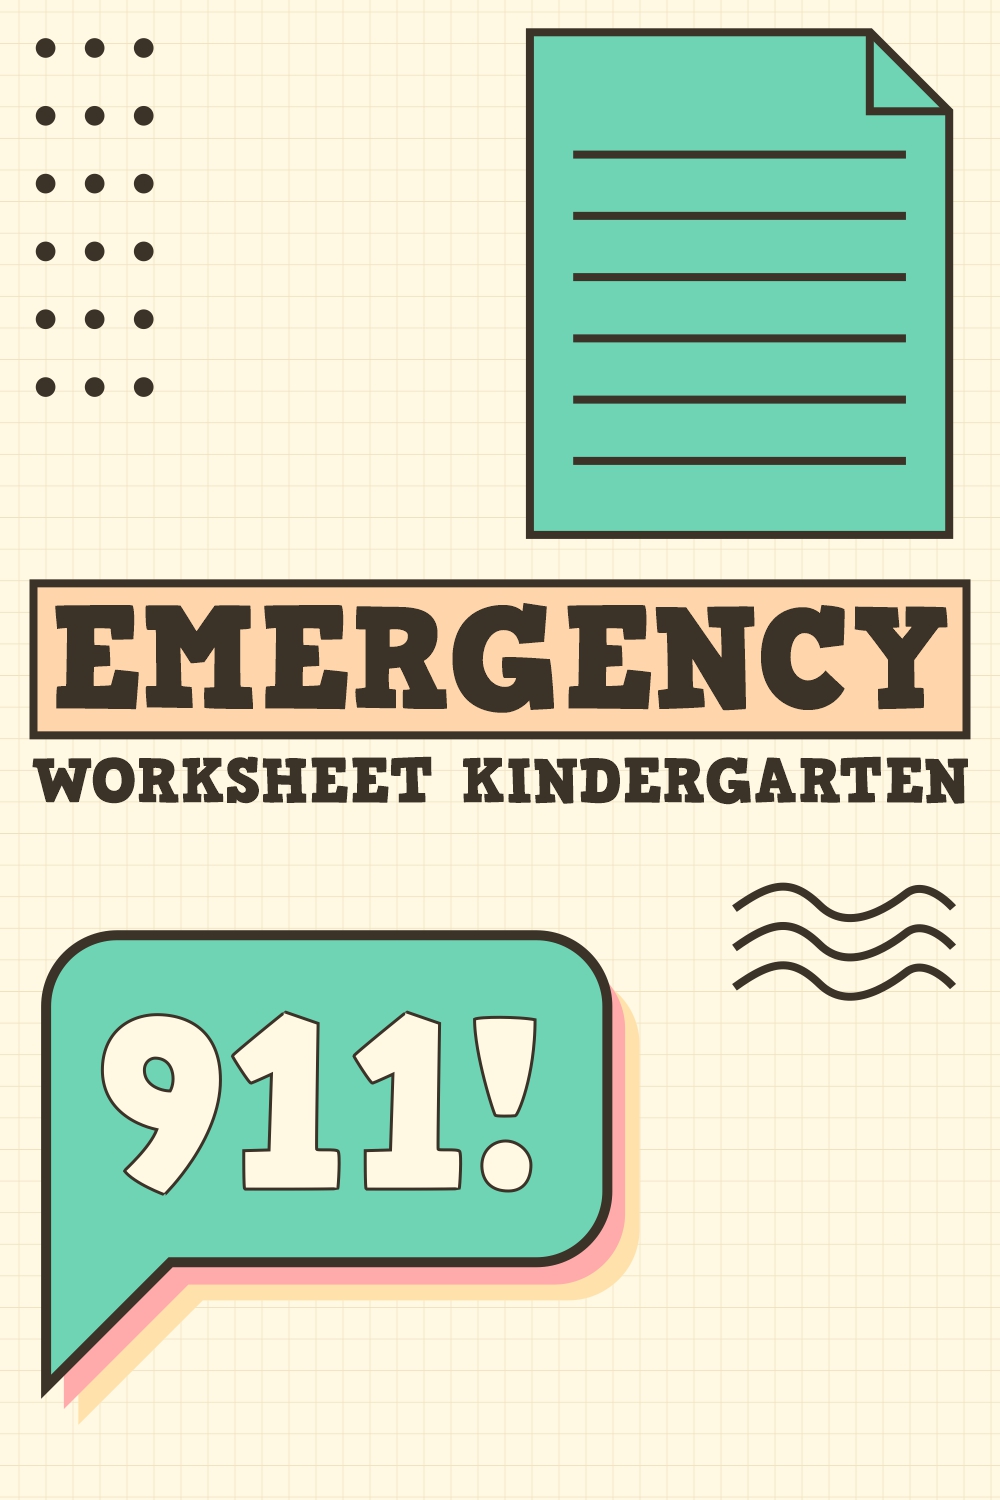 12 Images of Emergency Worksheets Kindergarten